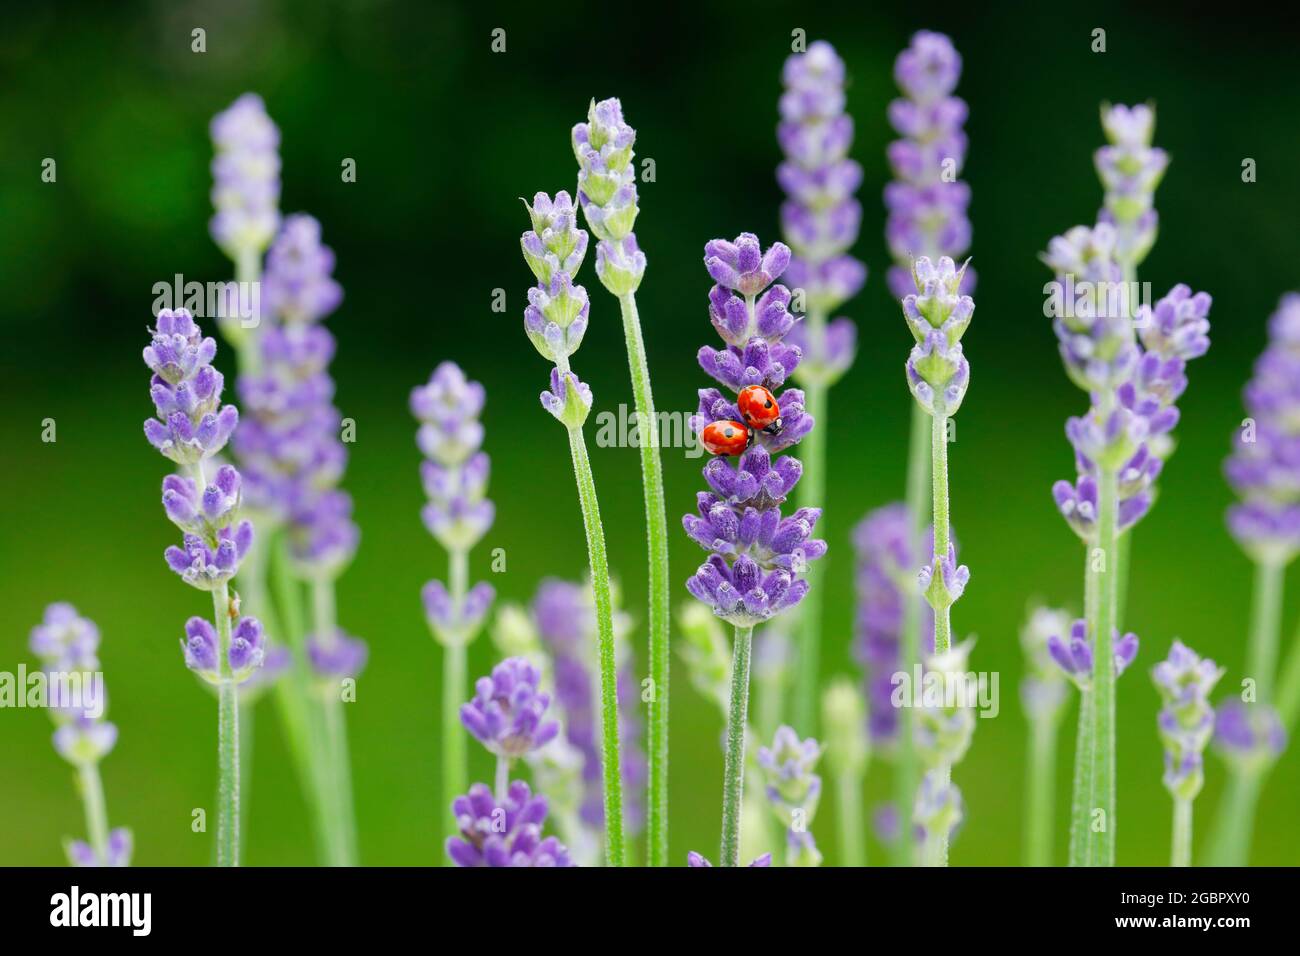 zoologia, insetti (Insecta), ladybird a due punti su fiori di lavanda, Svizzera, NON-USO-ESCLUSIVO PER IL BIGLIETTO-BIGLIETTO-DI-AUGURI-PIEGHEVOLE-USO-CARTOLINA Foto Stock